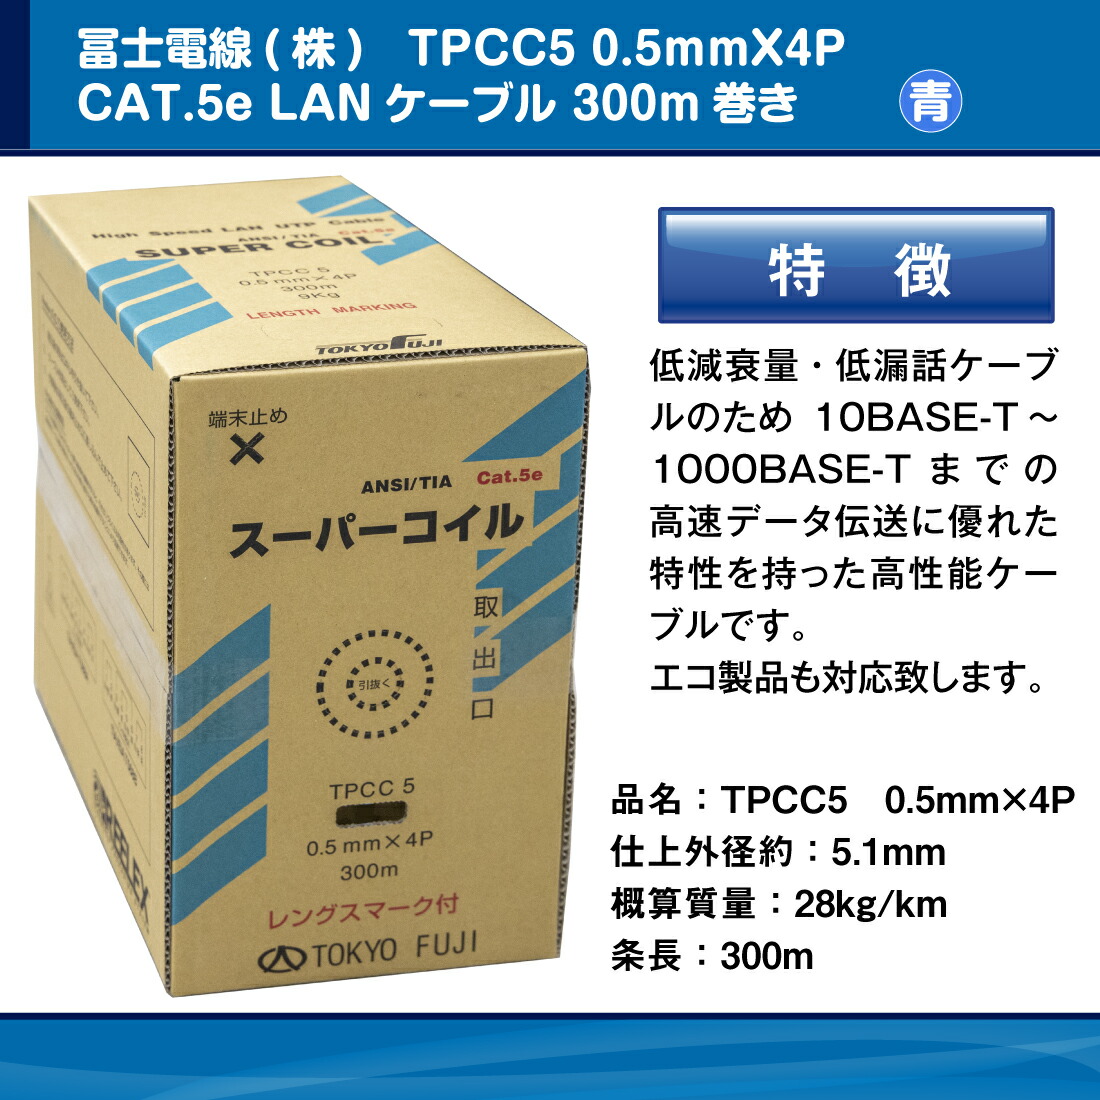 冨士電線 TPCC5 0.5mm×4P レングスマーク付 スーパーコイル 青/ブルー Cat.5e 300m フジ